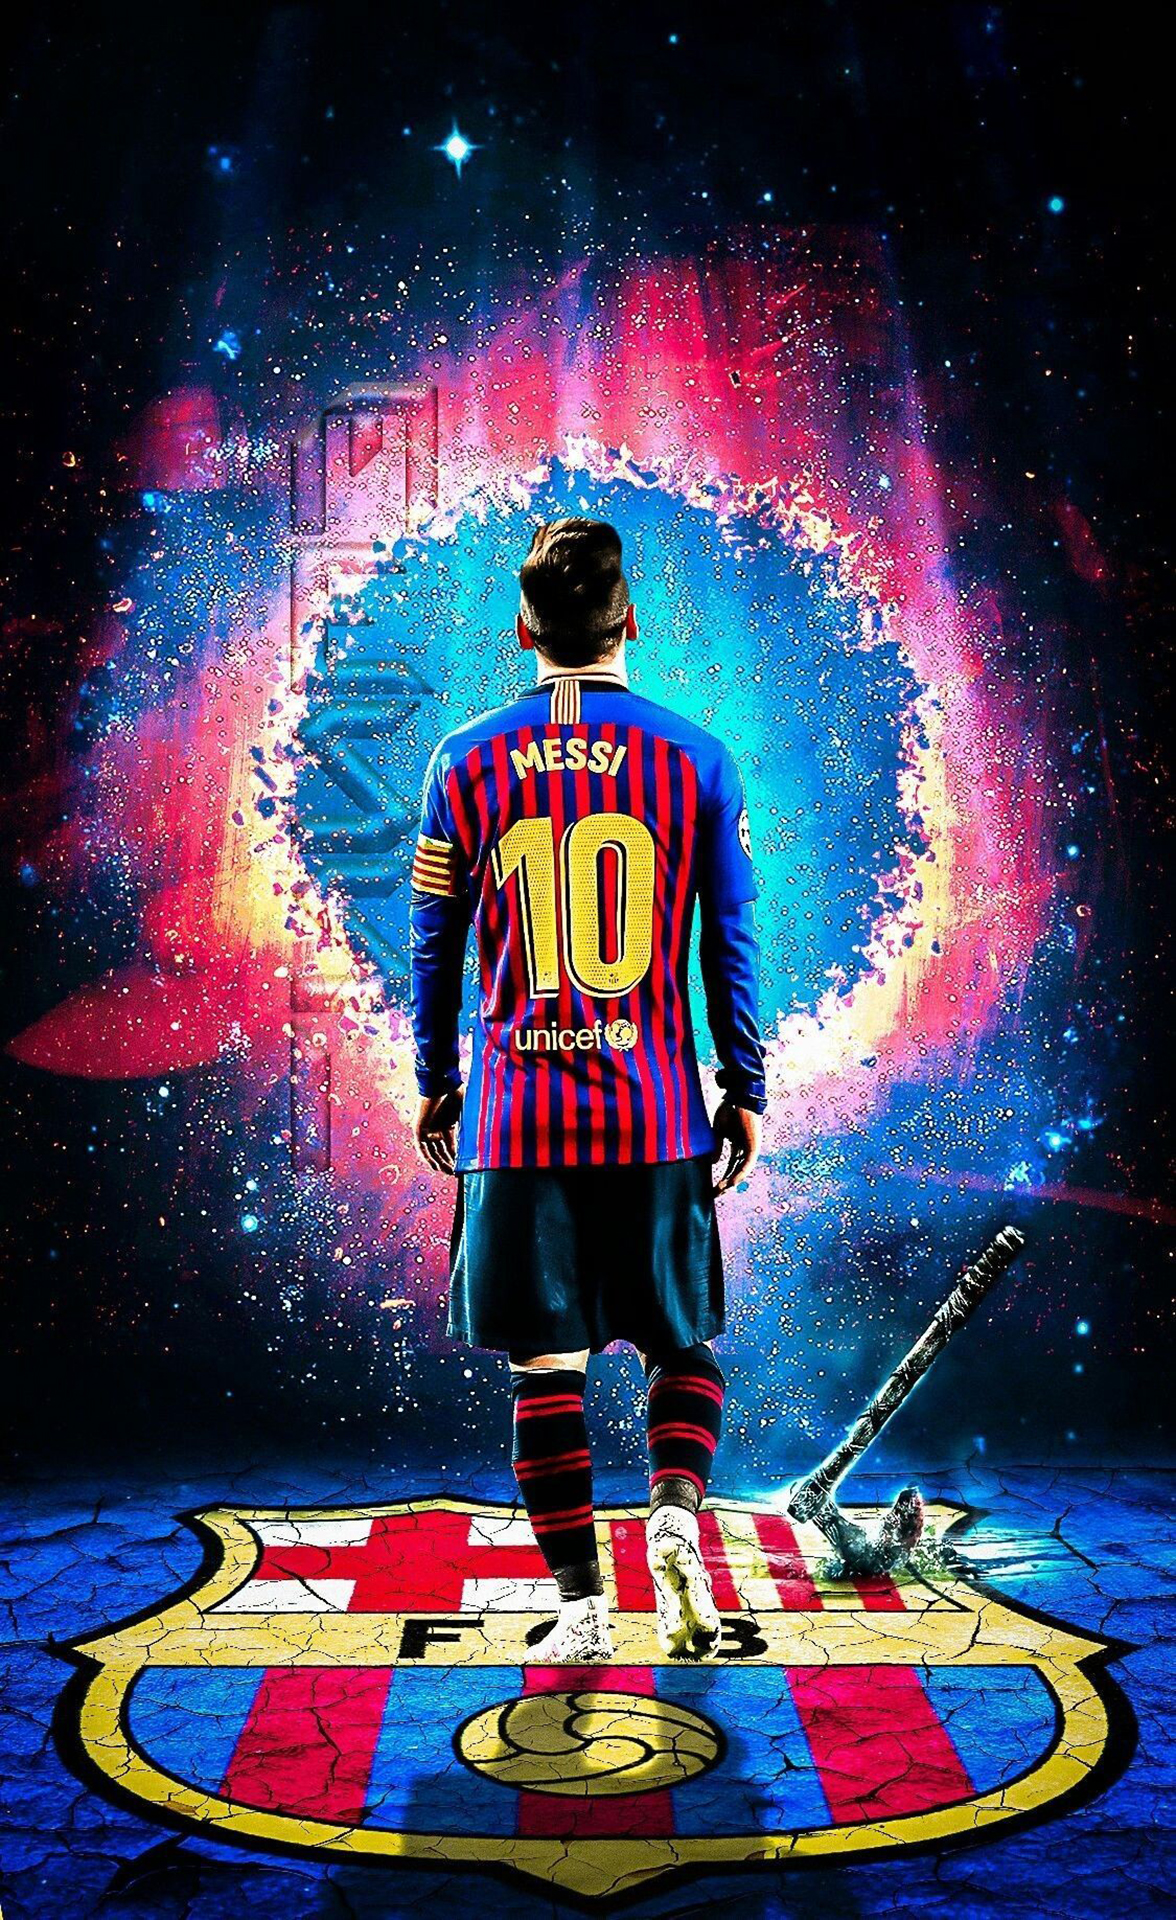 Hình nền Messi Barcelona 3D là một sự kết hợp tuyệt vời giữa phong cách độc đáo của Messi và sự đẳng cấp của CLB Barcelona. Bức hình nền sẽ khiến bạn cảm thấy thật sự đam mê và tự hào khi hiển thị lên màn hình. Hãy xem hình ảnh liên quan và tìm hiểu thêm về sự kết hợp hoàn hảo này.